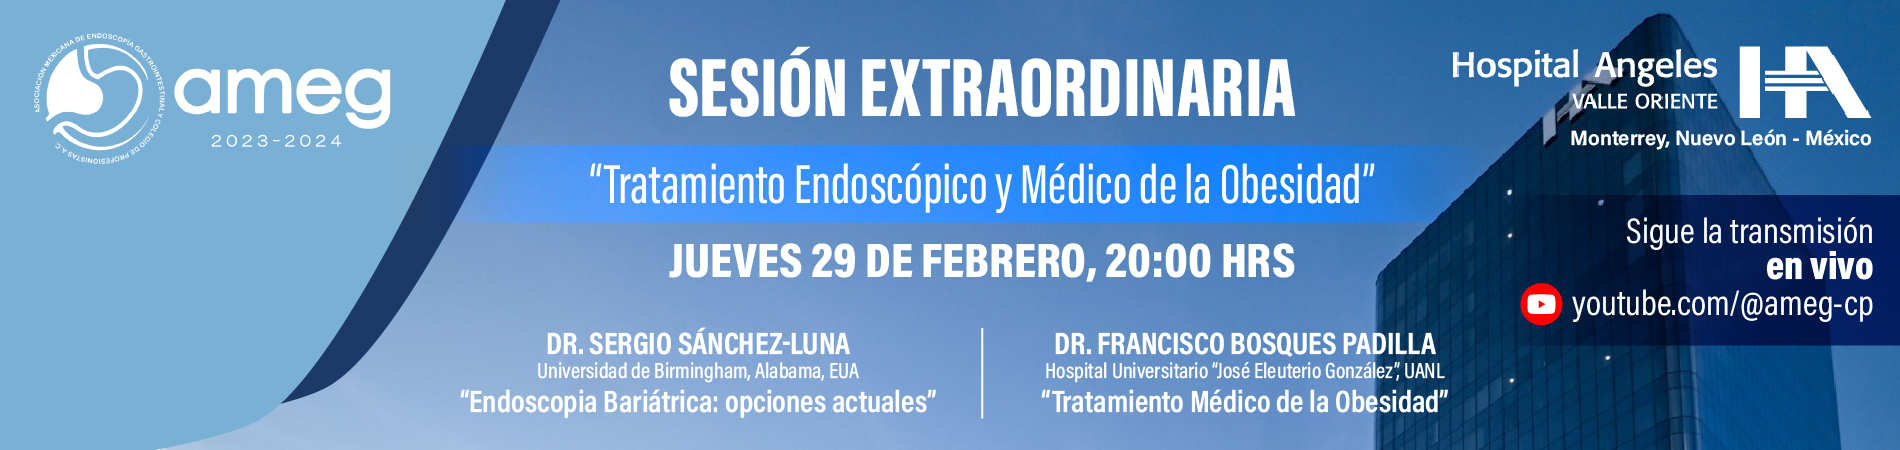 Sesion Extraordinaria. Tratamiento Endoscopico y Medico de la Obesidad